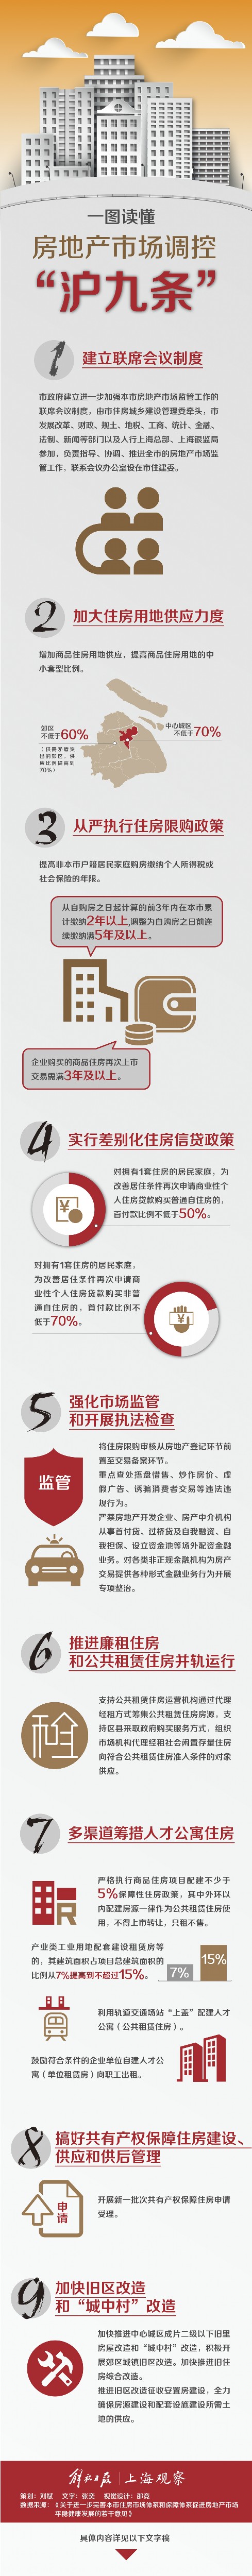 上海3.25房产新政,上海房价,上海房价跌了没,上海房价究竟跌了没